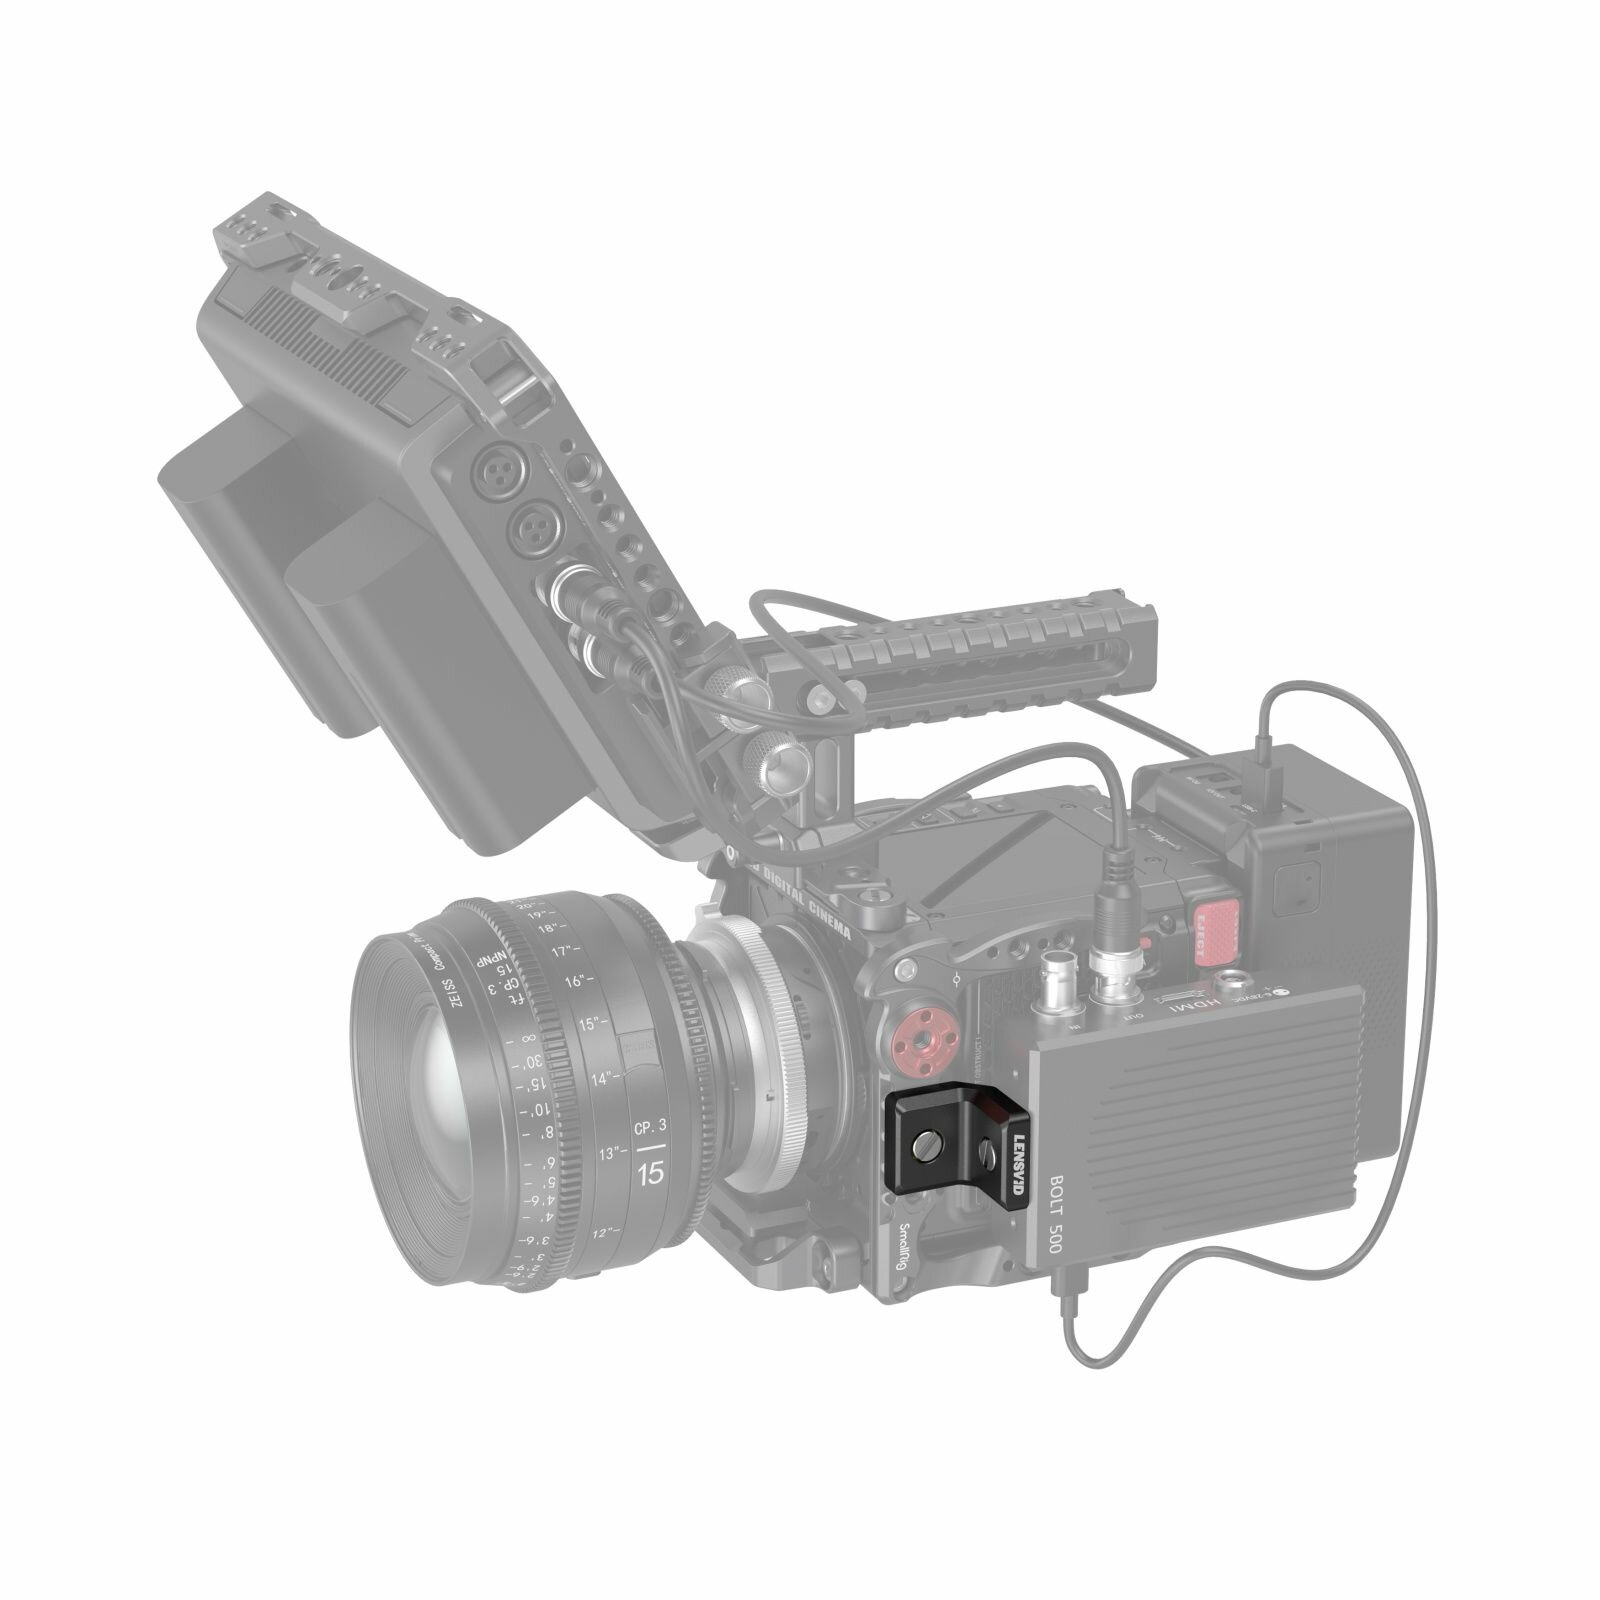 Кронштейн SmallRig x LensVid MD4360 для крепления аксессуаров на цифровых камерах